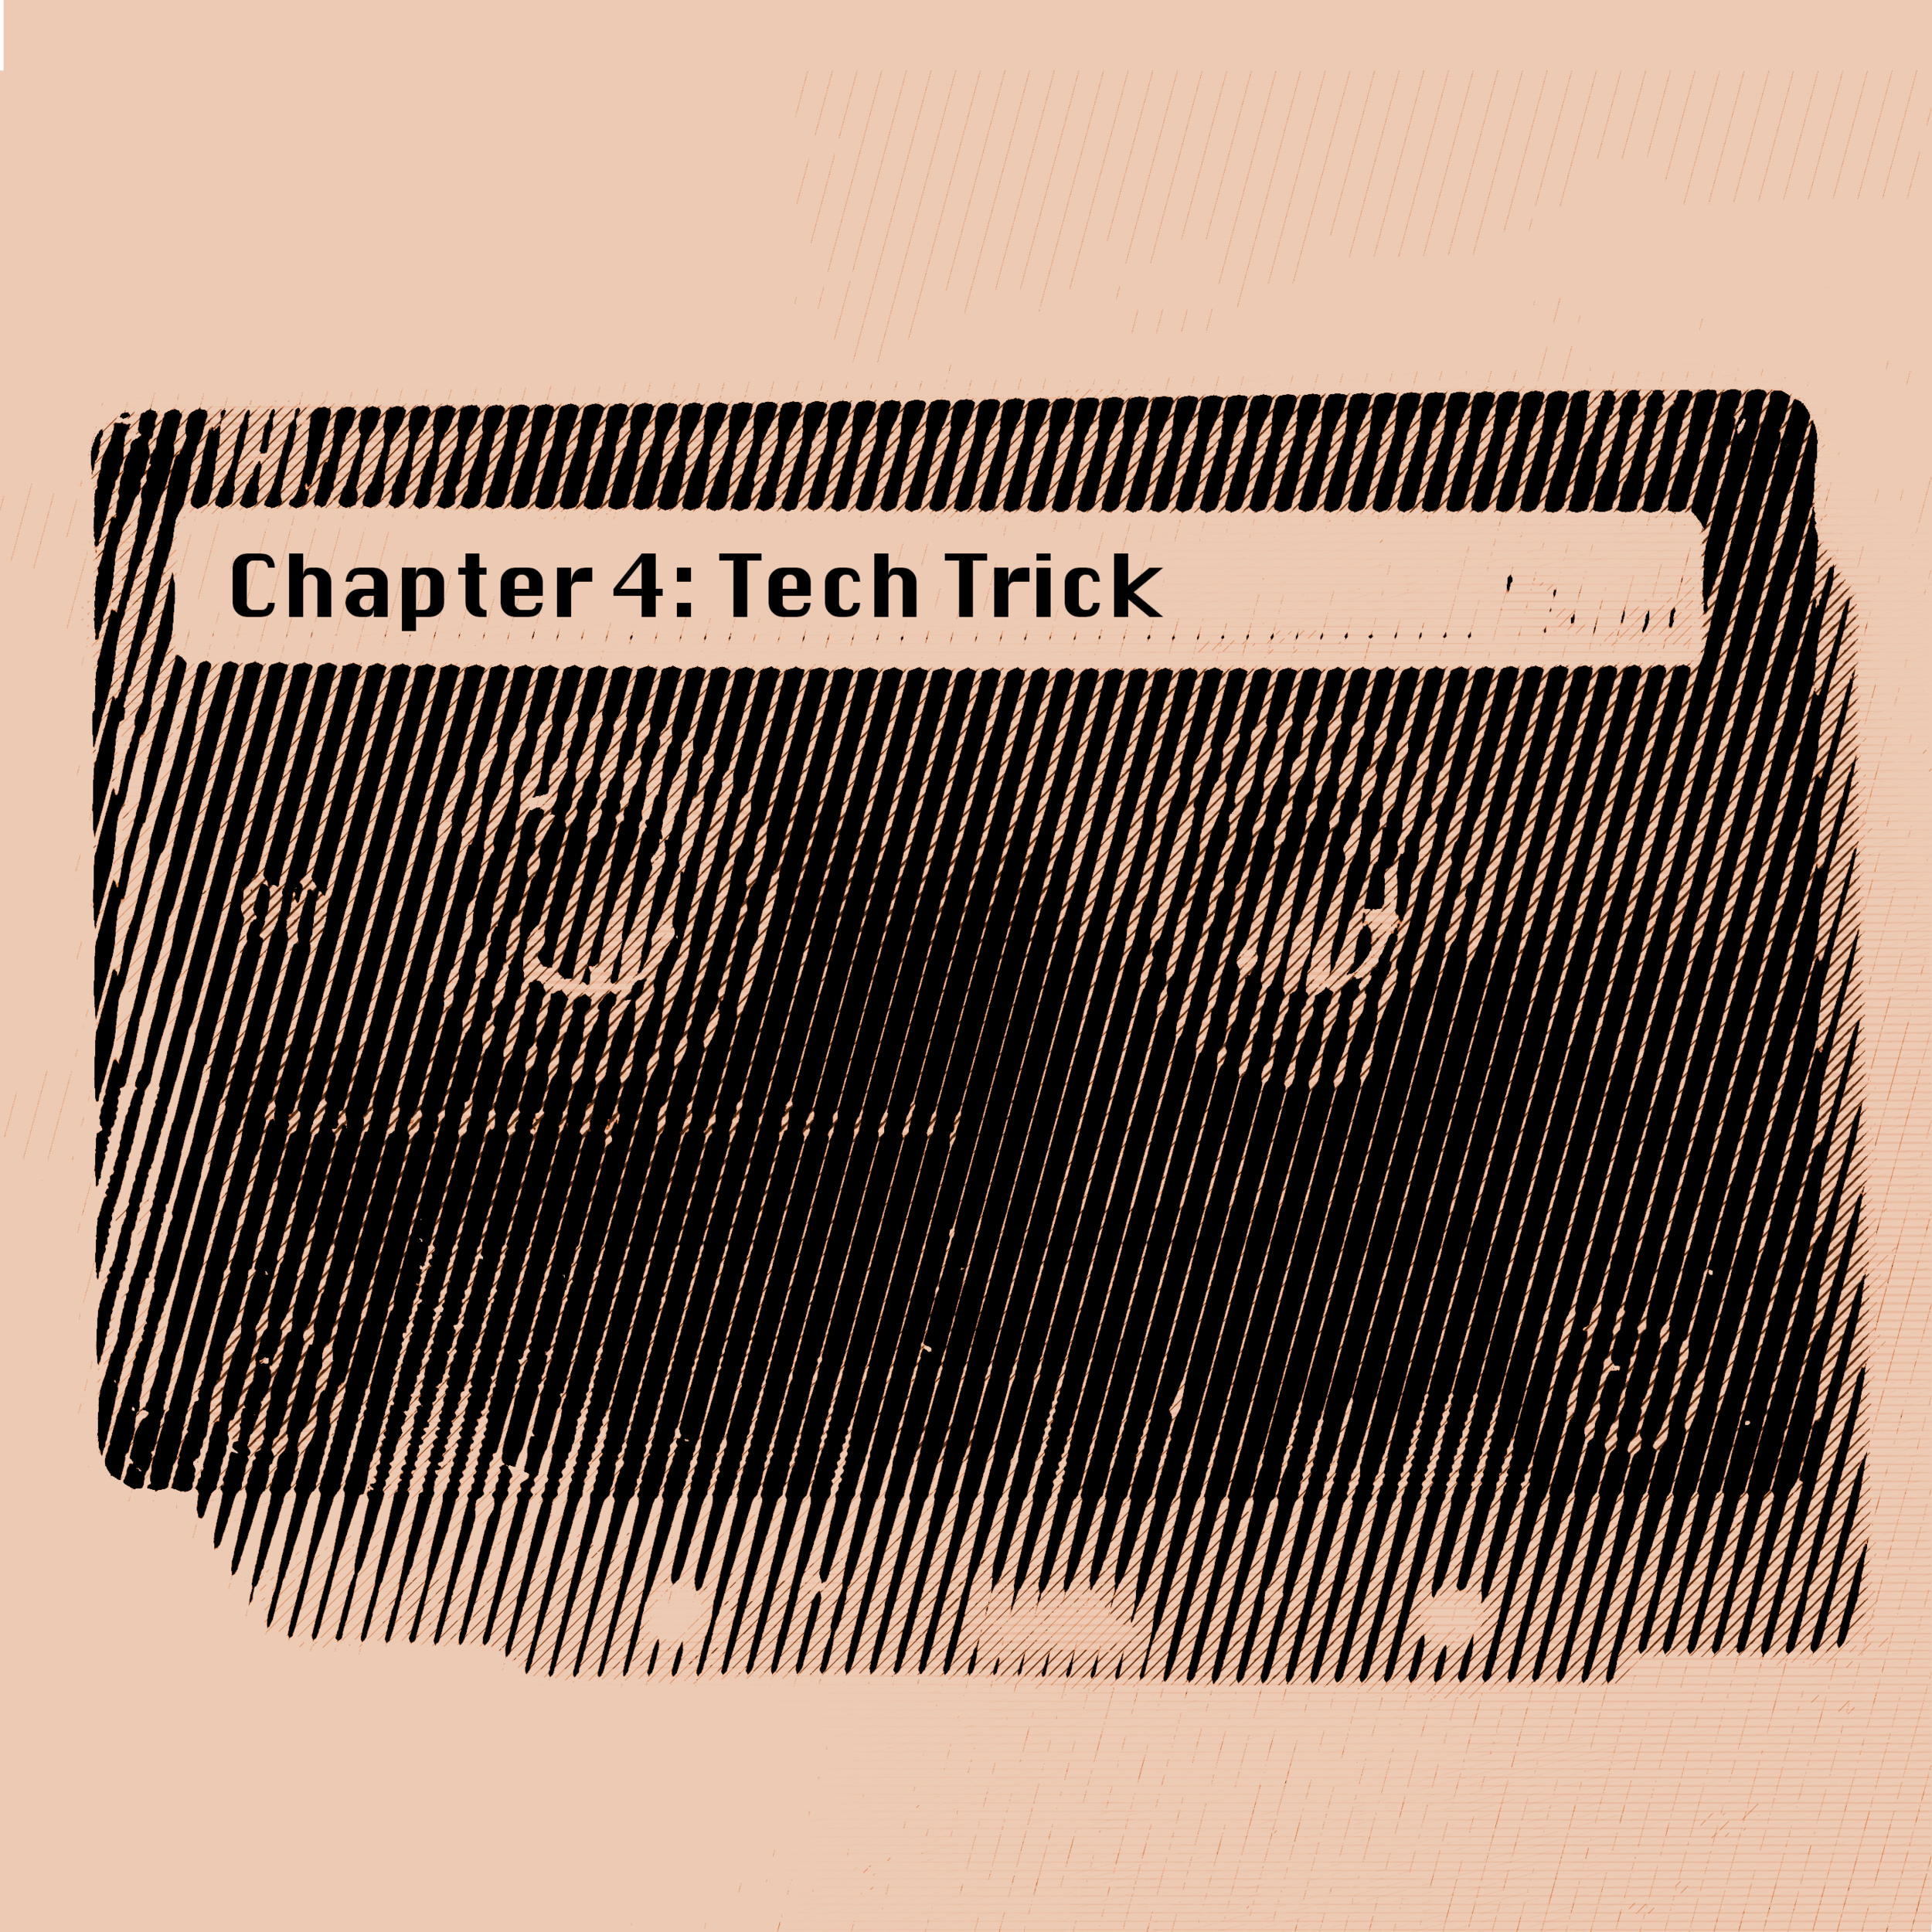 Tech Trick - Dr. Doppler